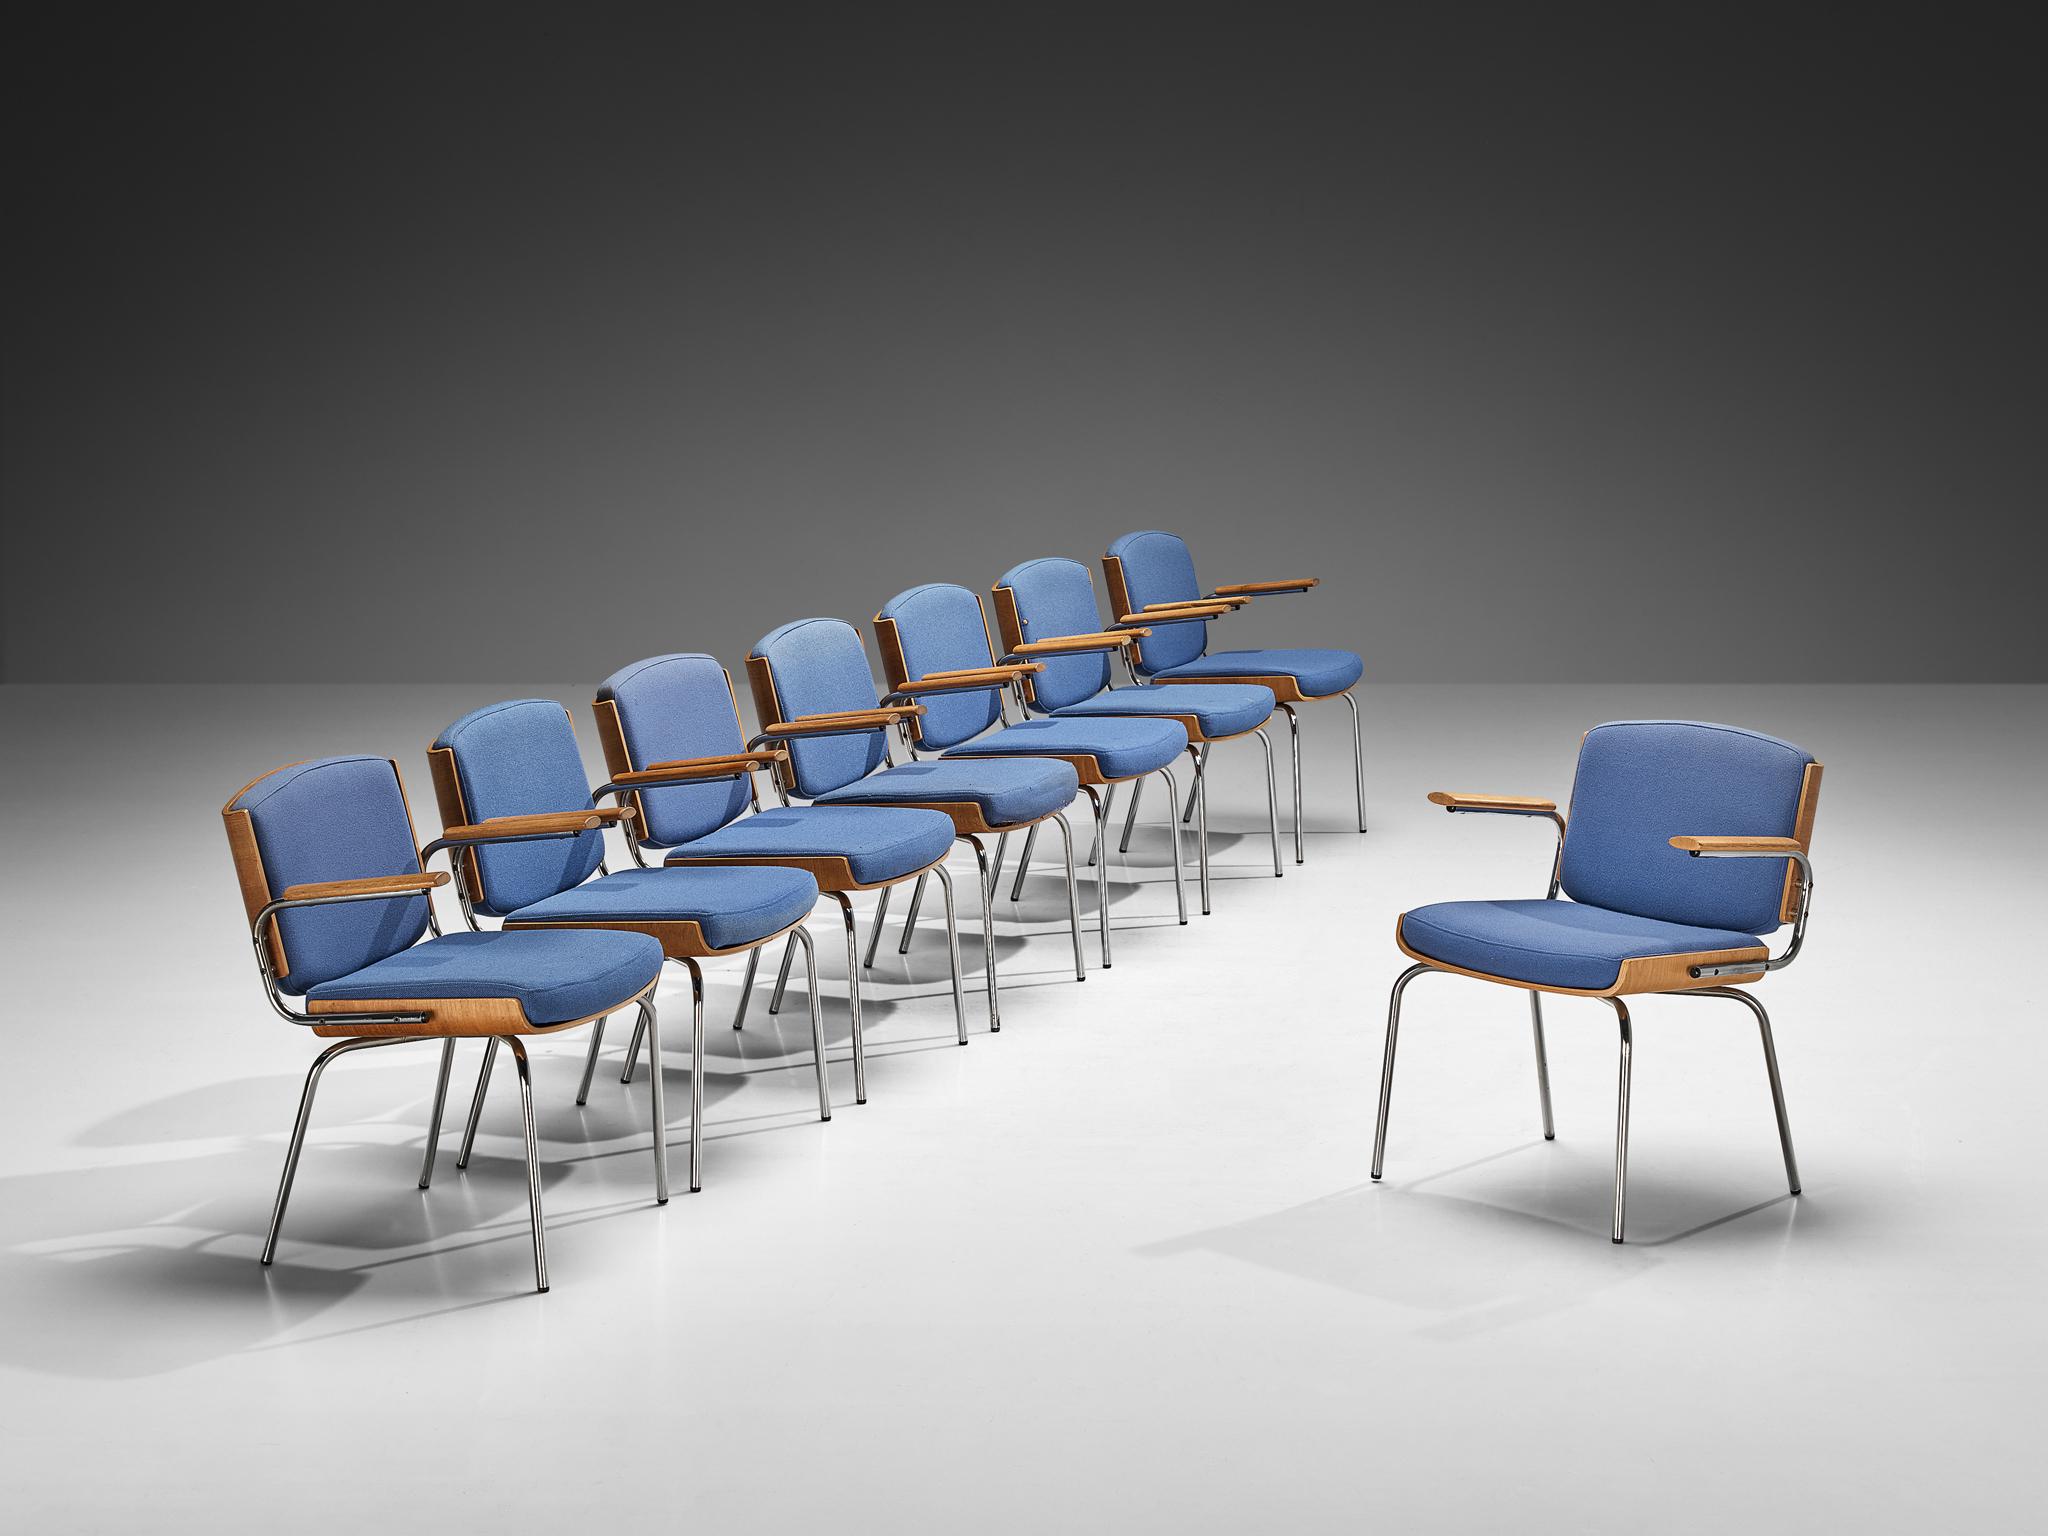 Fabrice Duba Møbelindustri, ensemble de huit fauteuils, teck plié, chêne, métal chromé, tissu, Danemark, années 1970. 

Ensemble de chaises danoises fabriquées par Duba Møbelindustri. L'ensemble de la construction du cadre est basé sur du